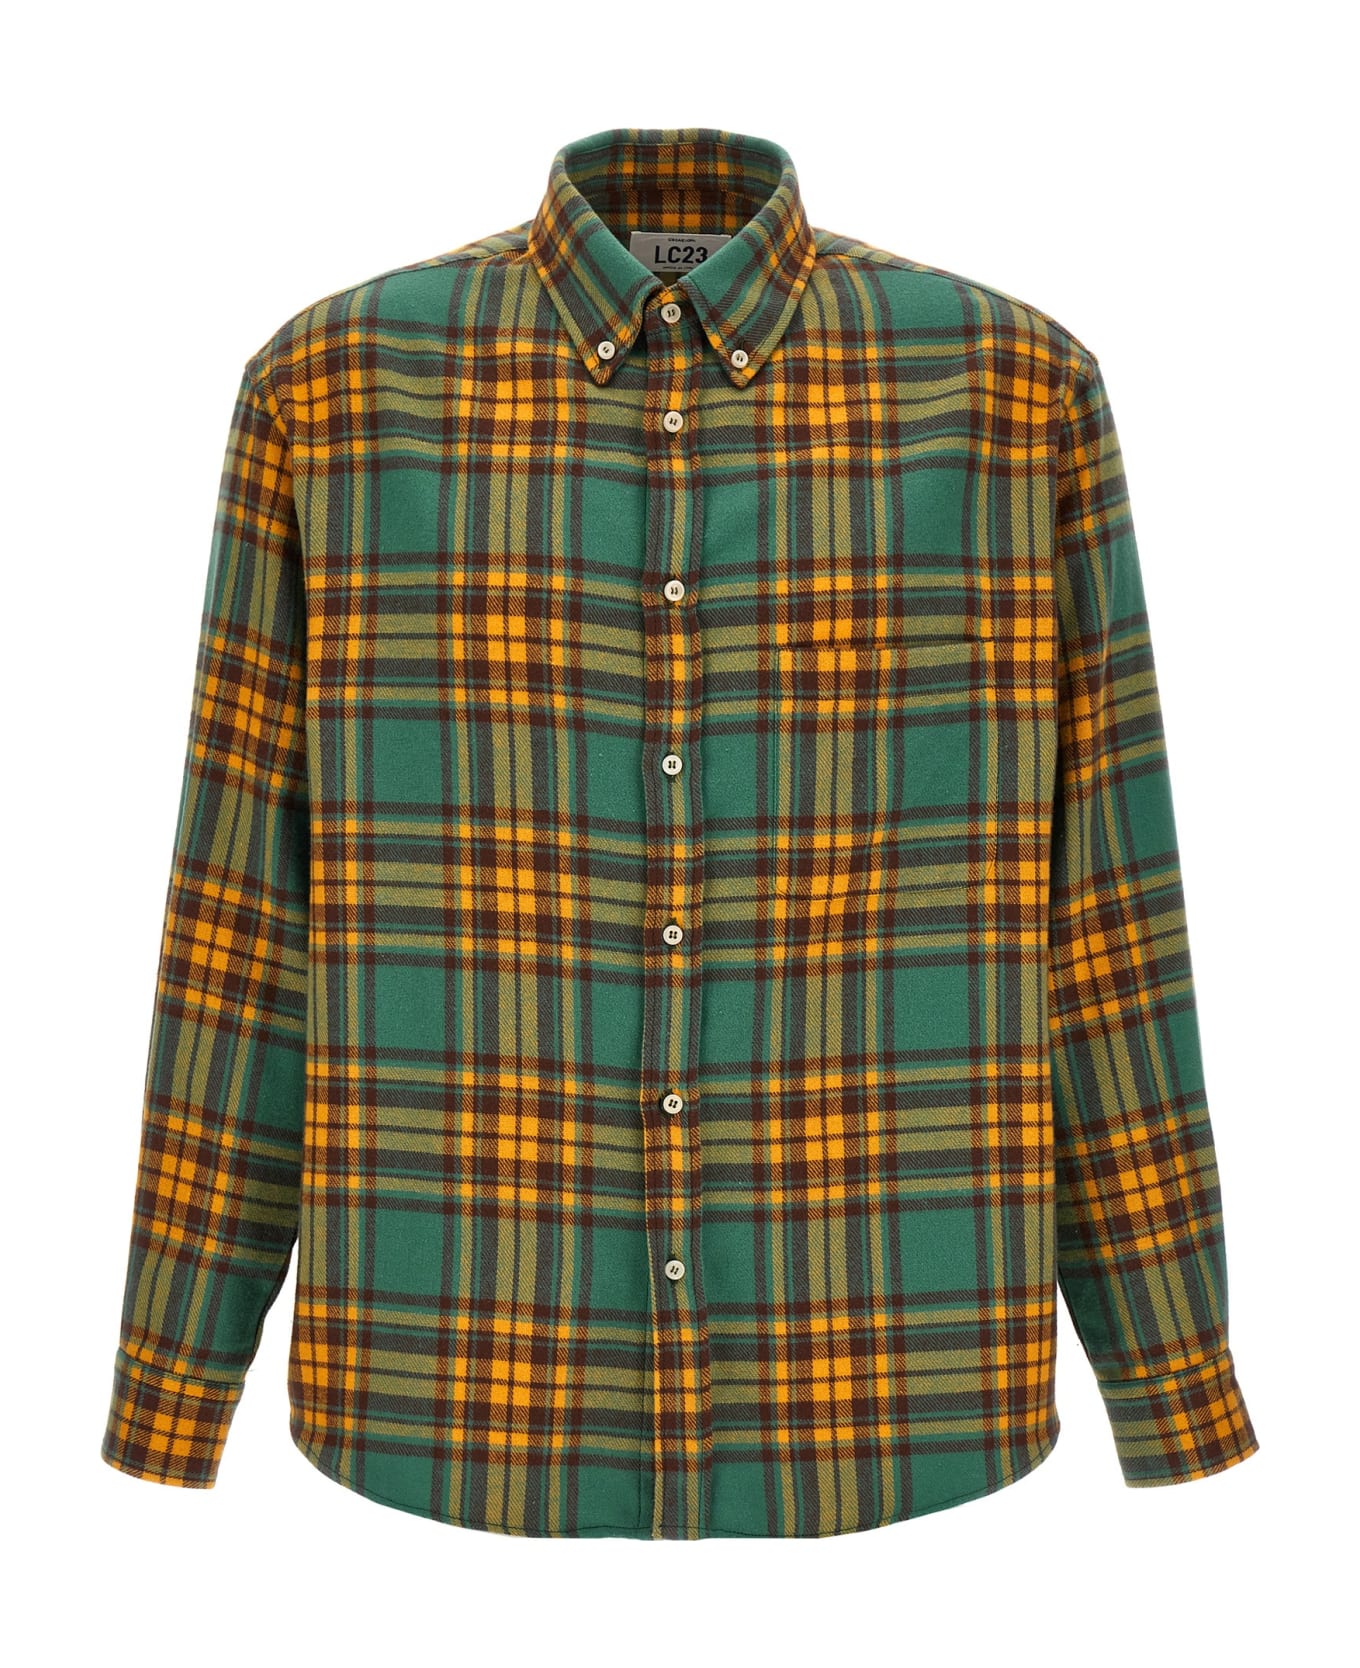 LC23 'check Flannel' Shirt - Multicolor